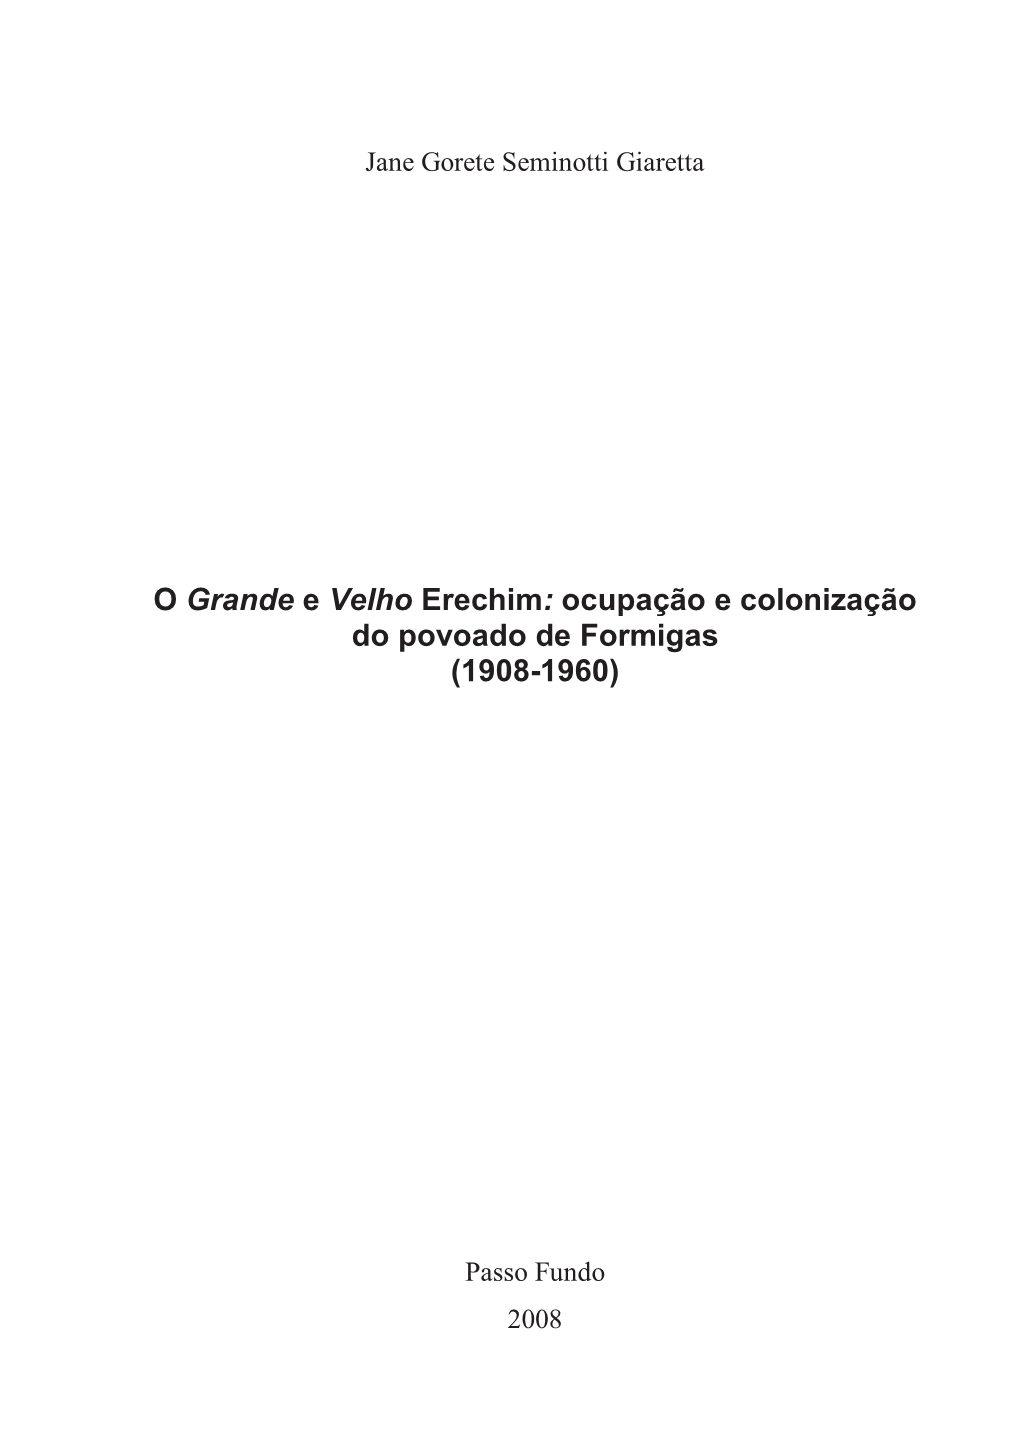 O Grande E Velho Erechim: Ocupação E Colonização Do Povoado De Formigas (1908-1960)